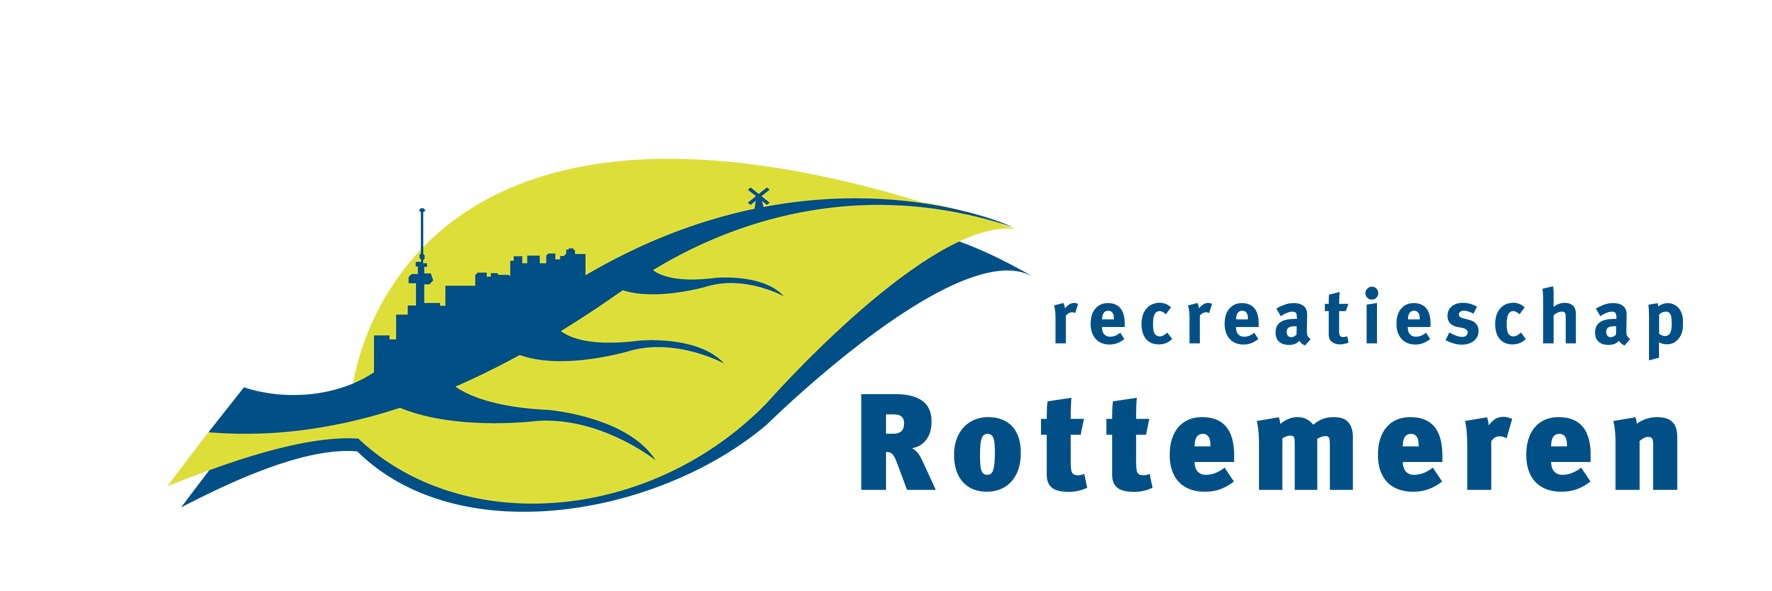 Logo Recreatieschap Rottemeren